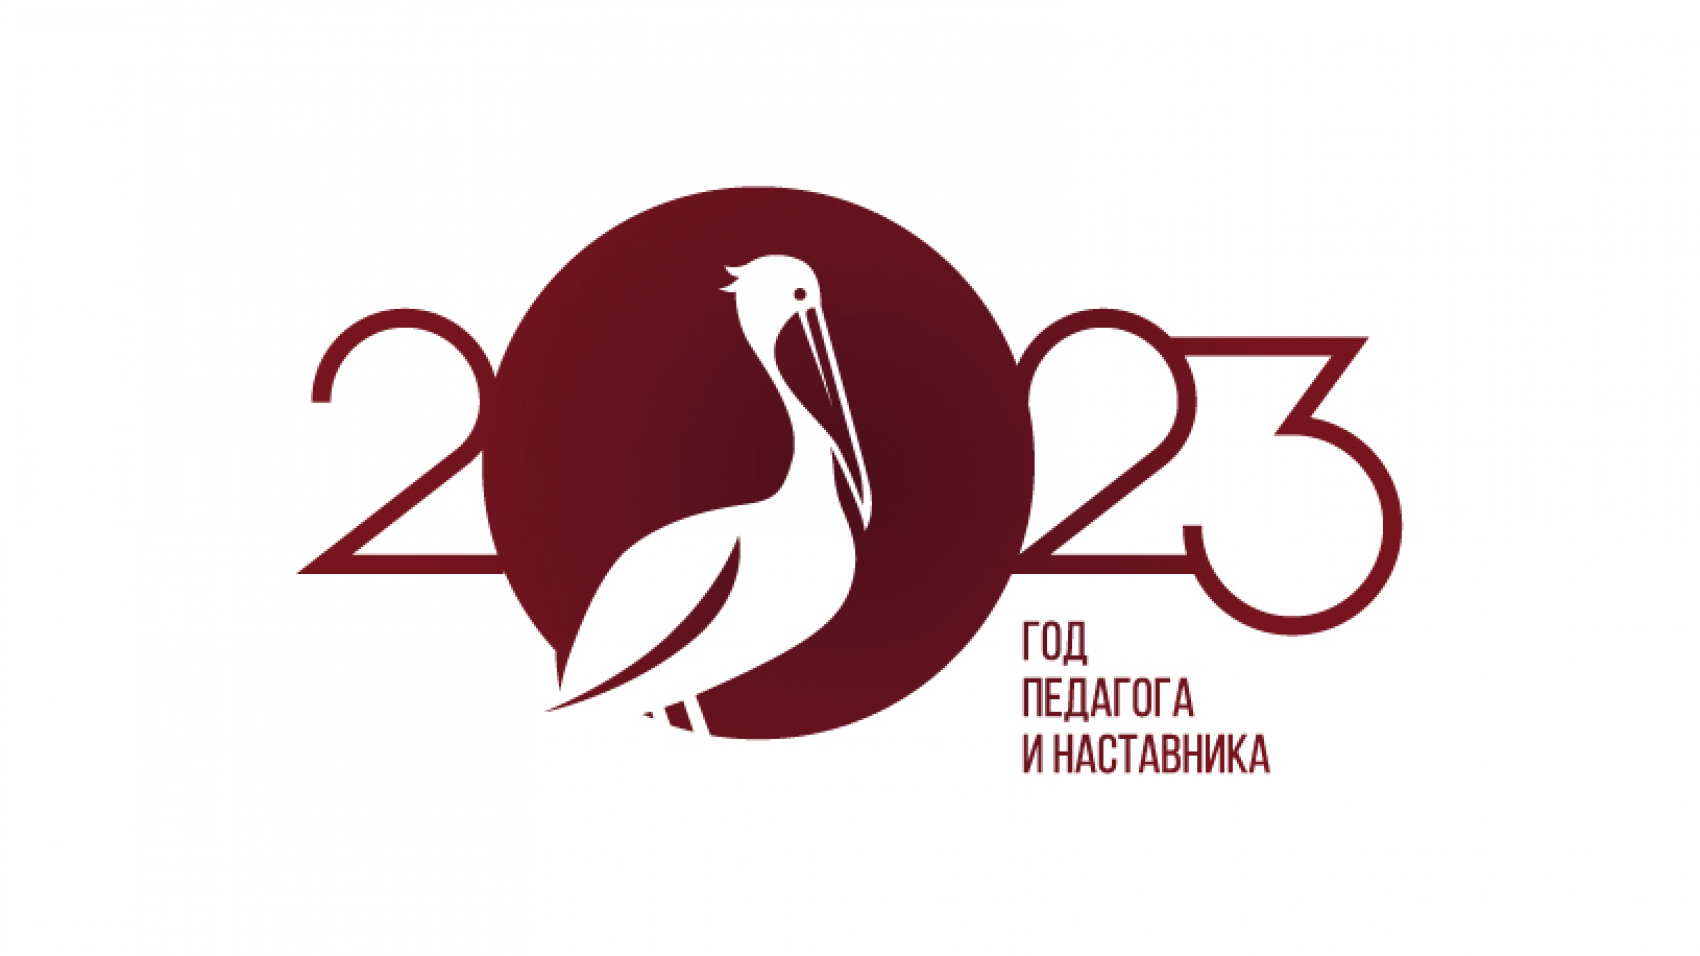 логотип Года педагога и наставника красный (1)